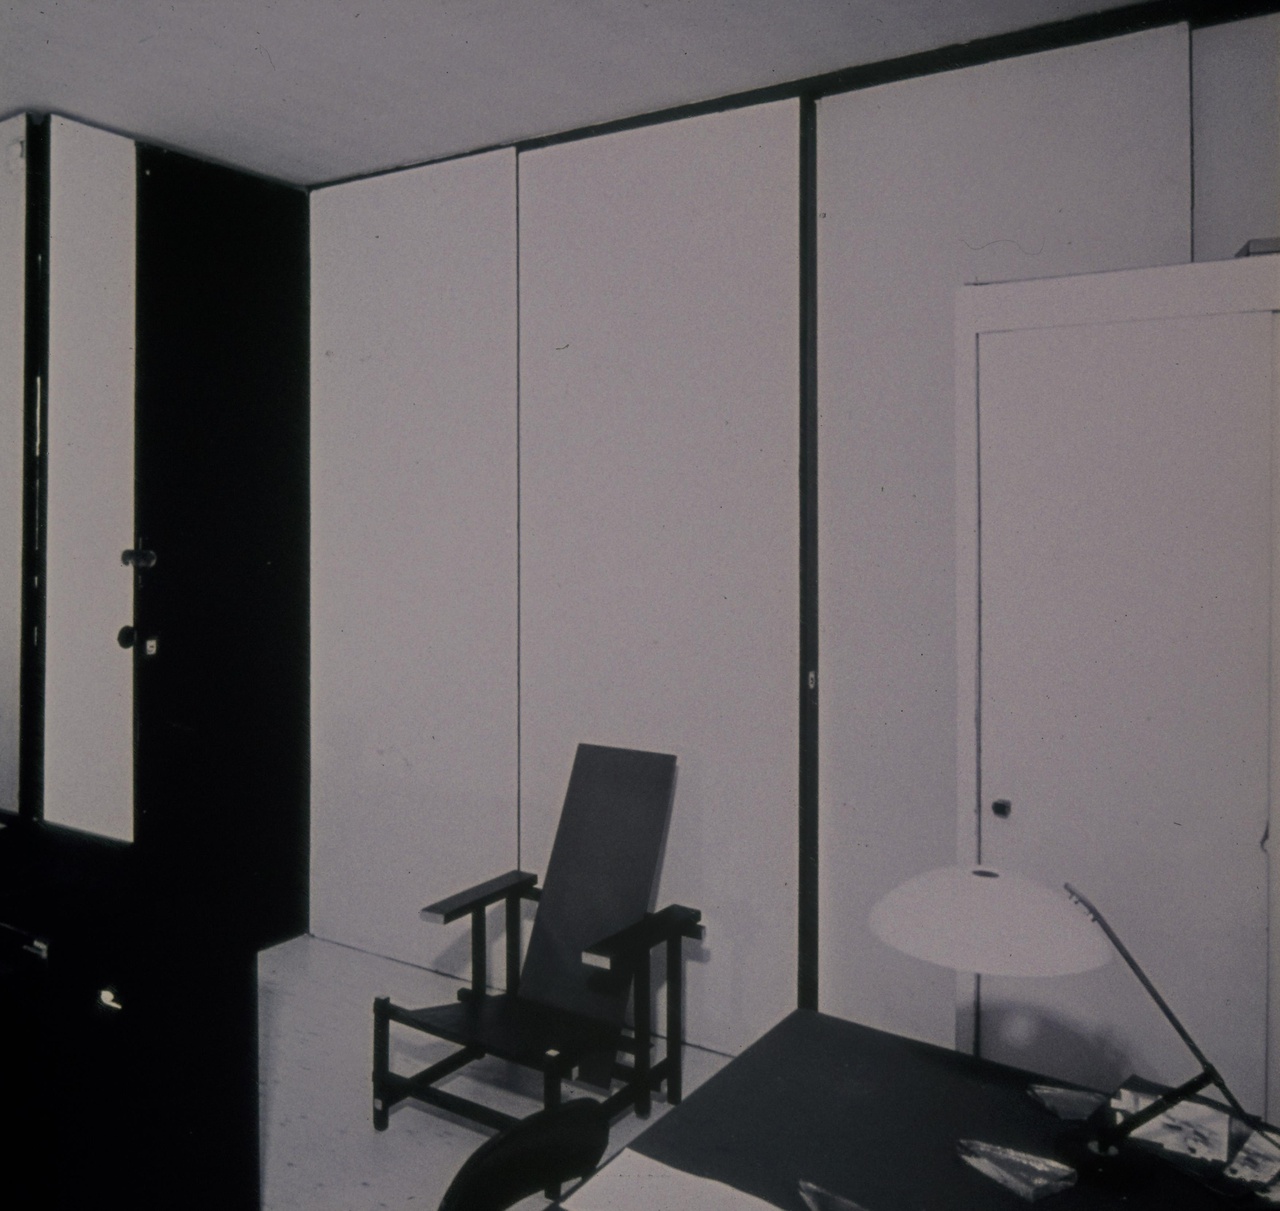 Afbeelding van Rietveld Schröderhuis - interieur boven - stoel 35 in kantoor voor dichte wand 2